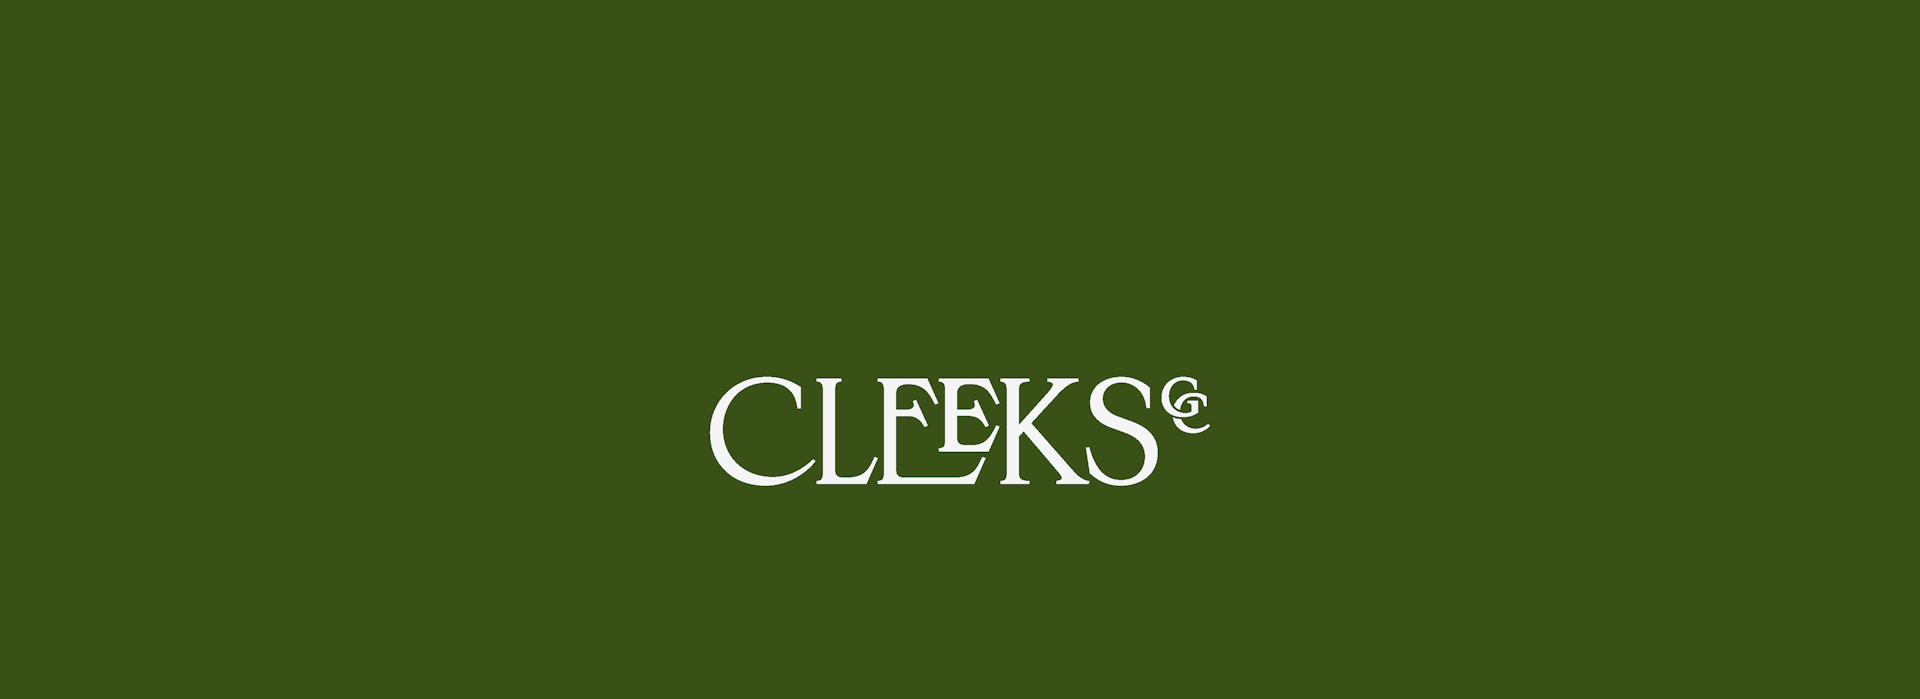 Cleeks-GC Wordmark